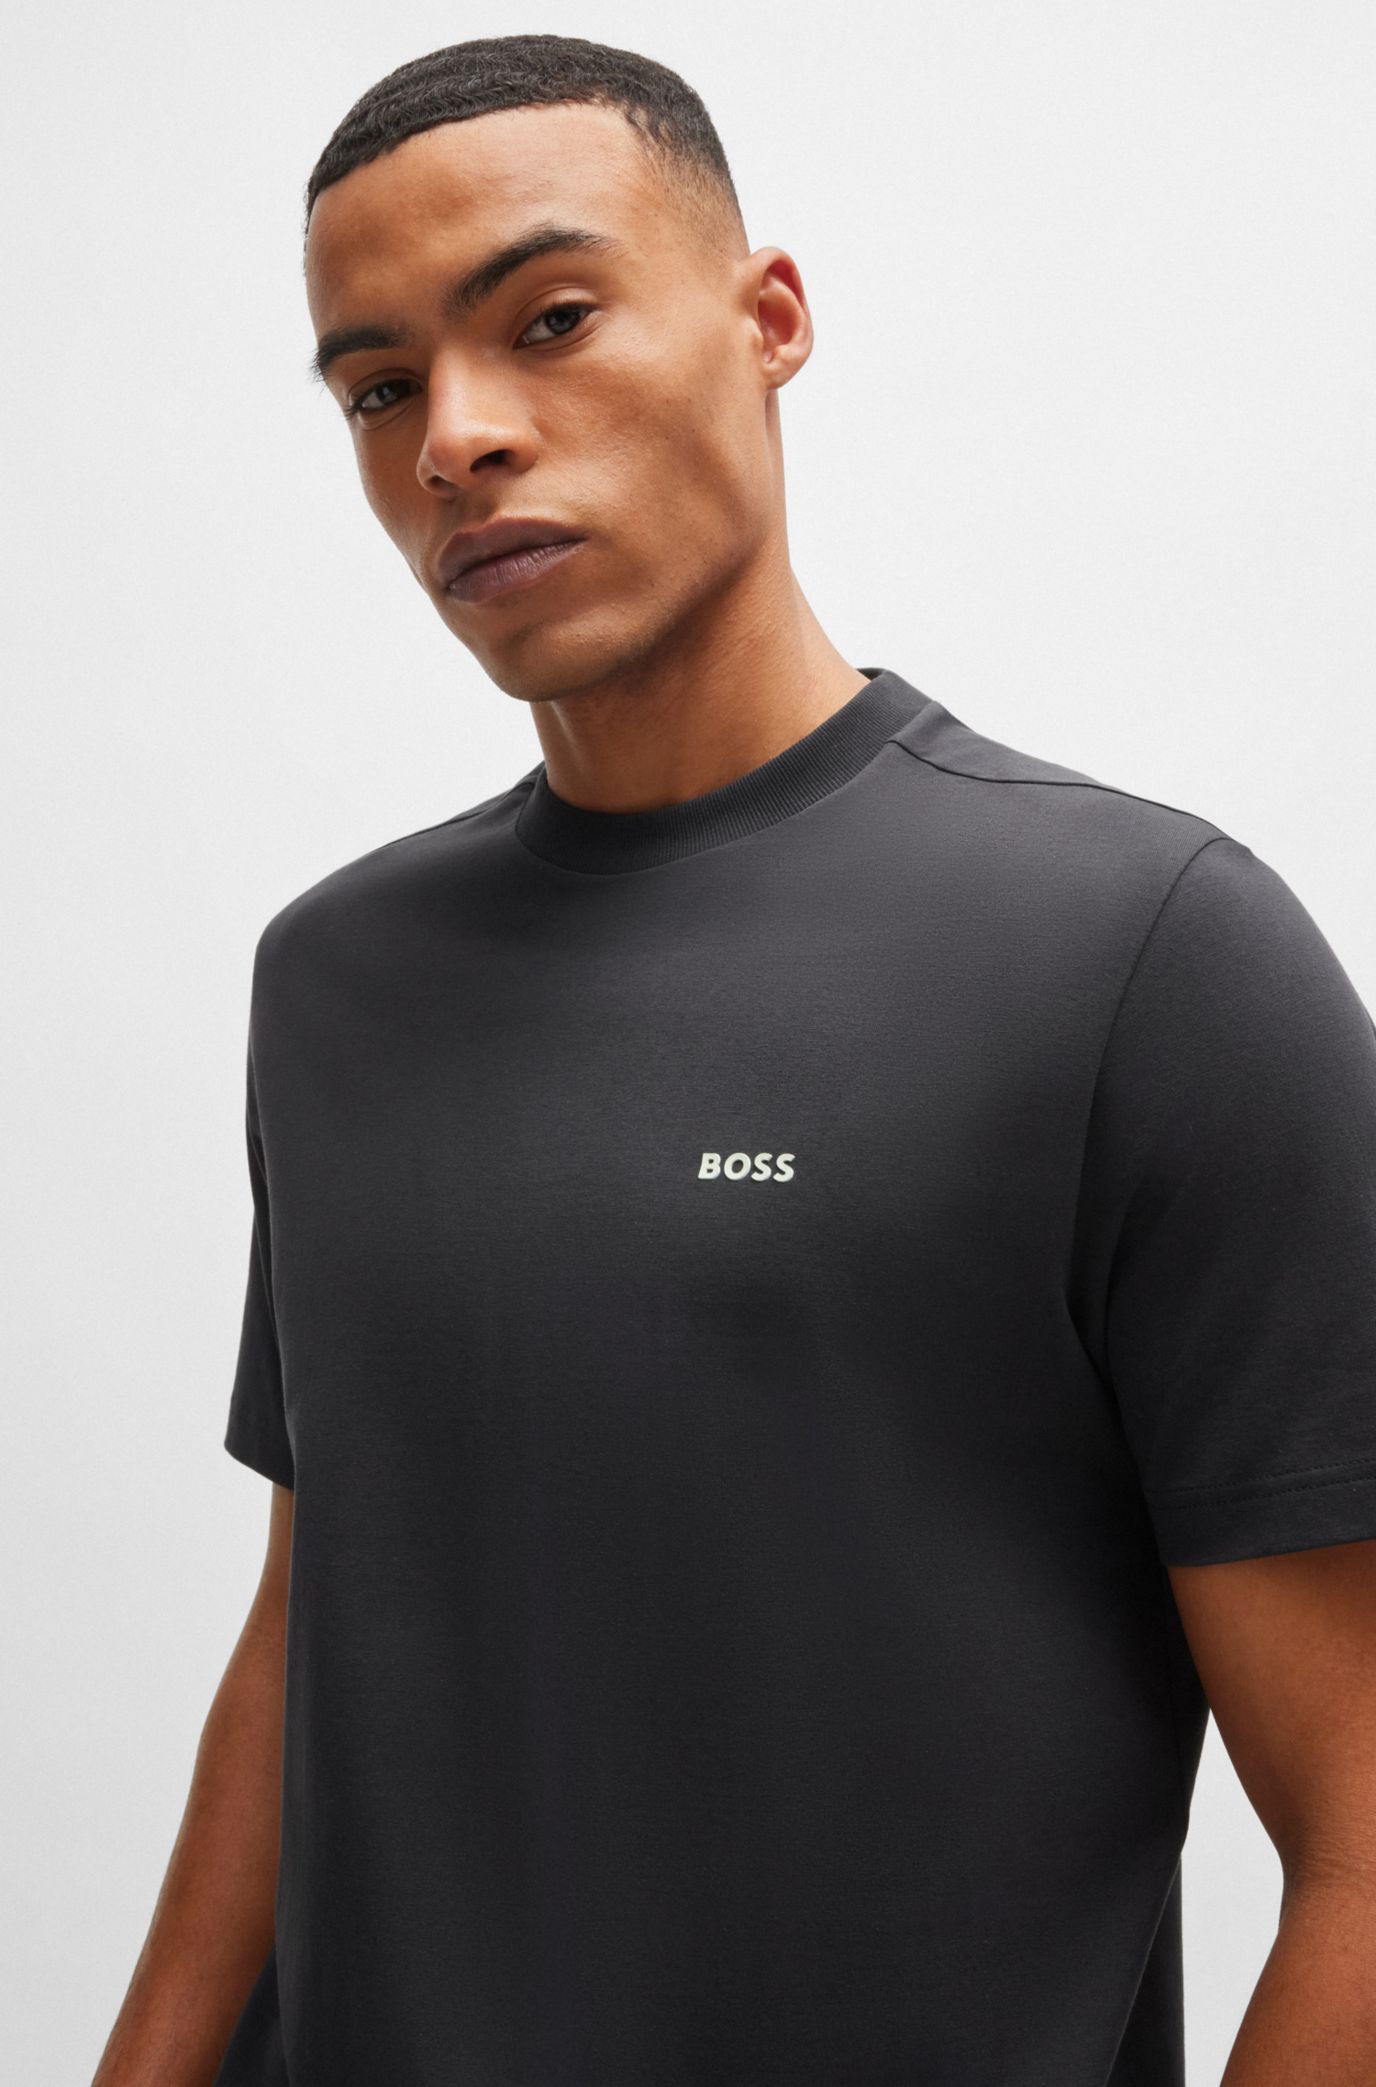 BOSS - ストレッチコットン レギュラーフィットTシャツ コントラストロゴ